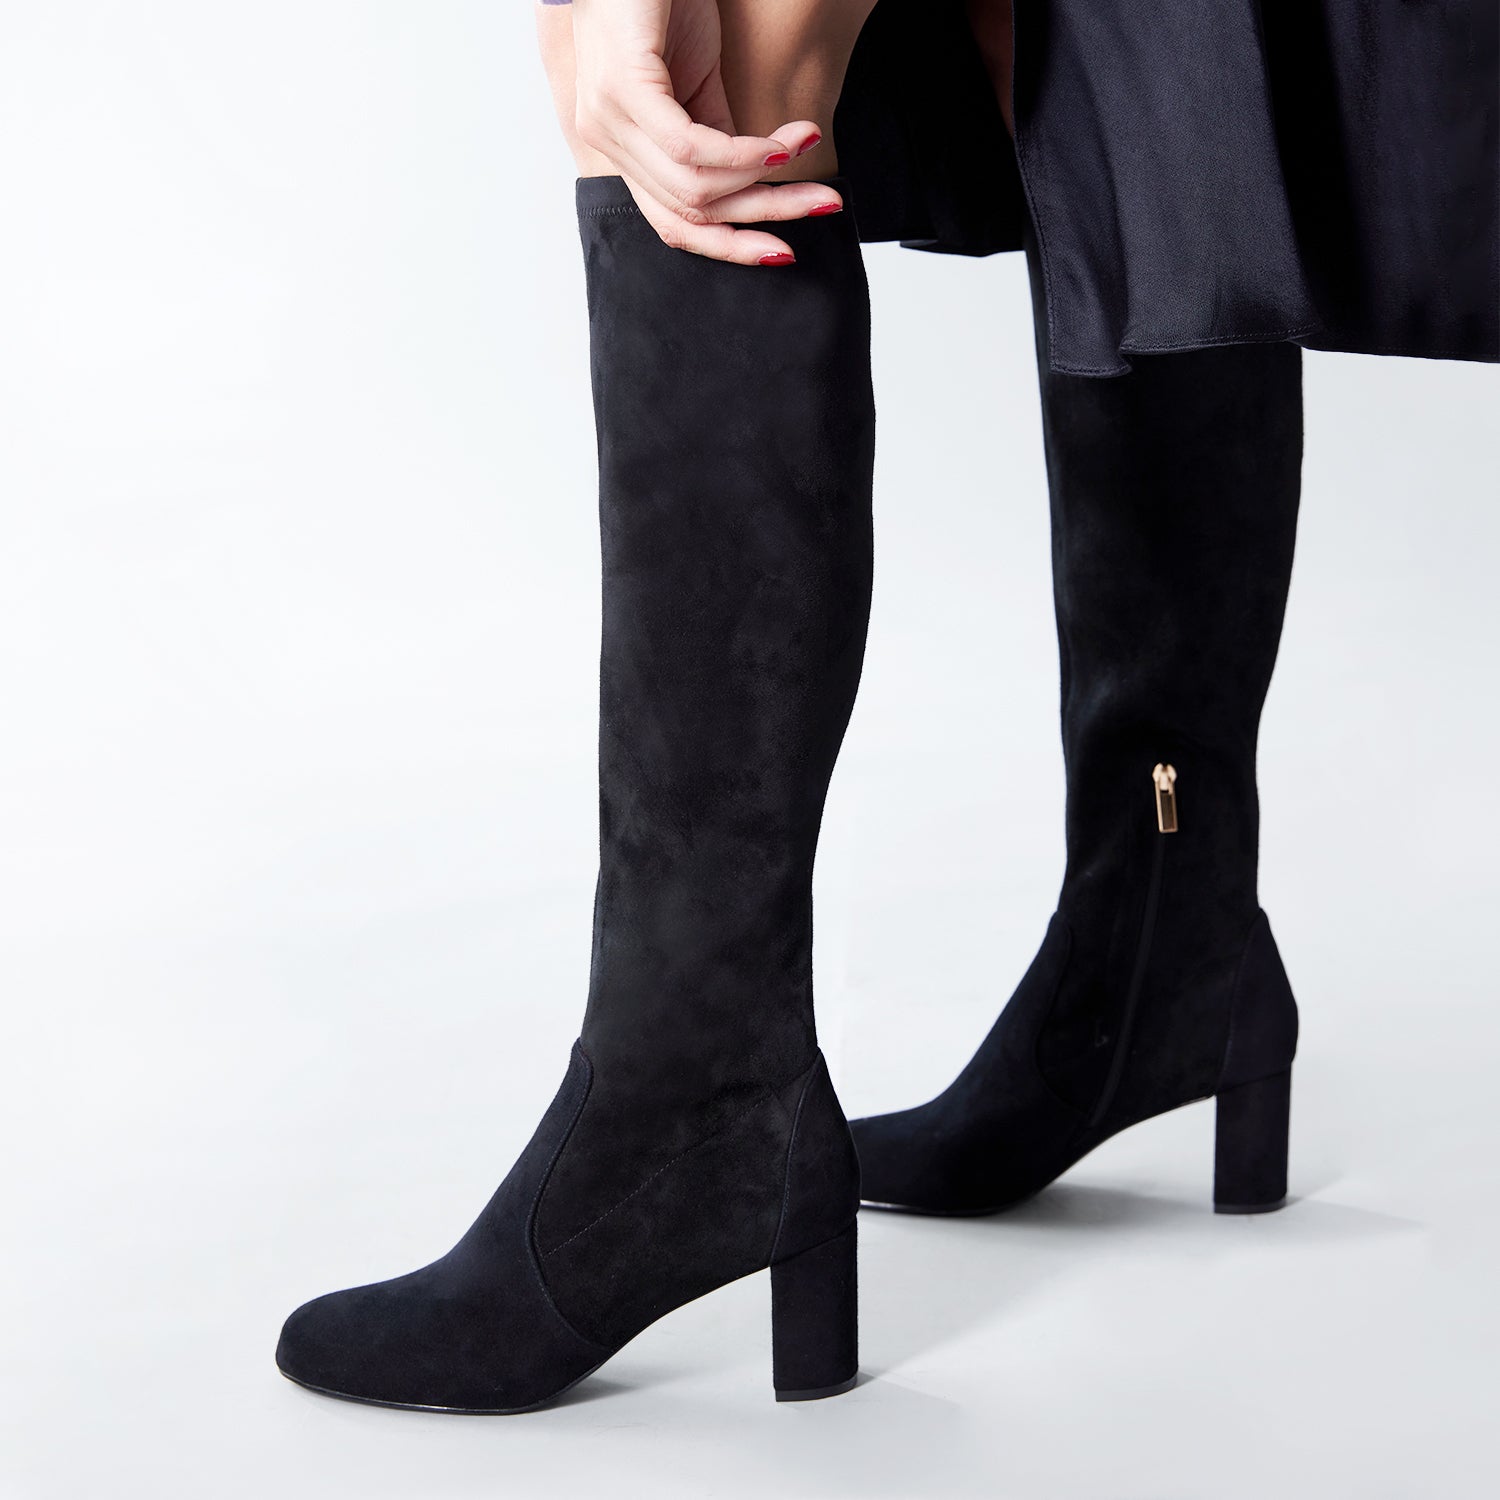 Noelle Knee High Boot 70mm | Black suede